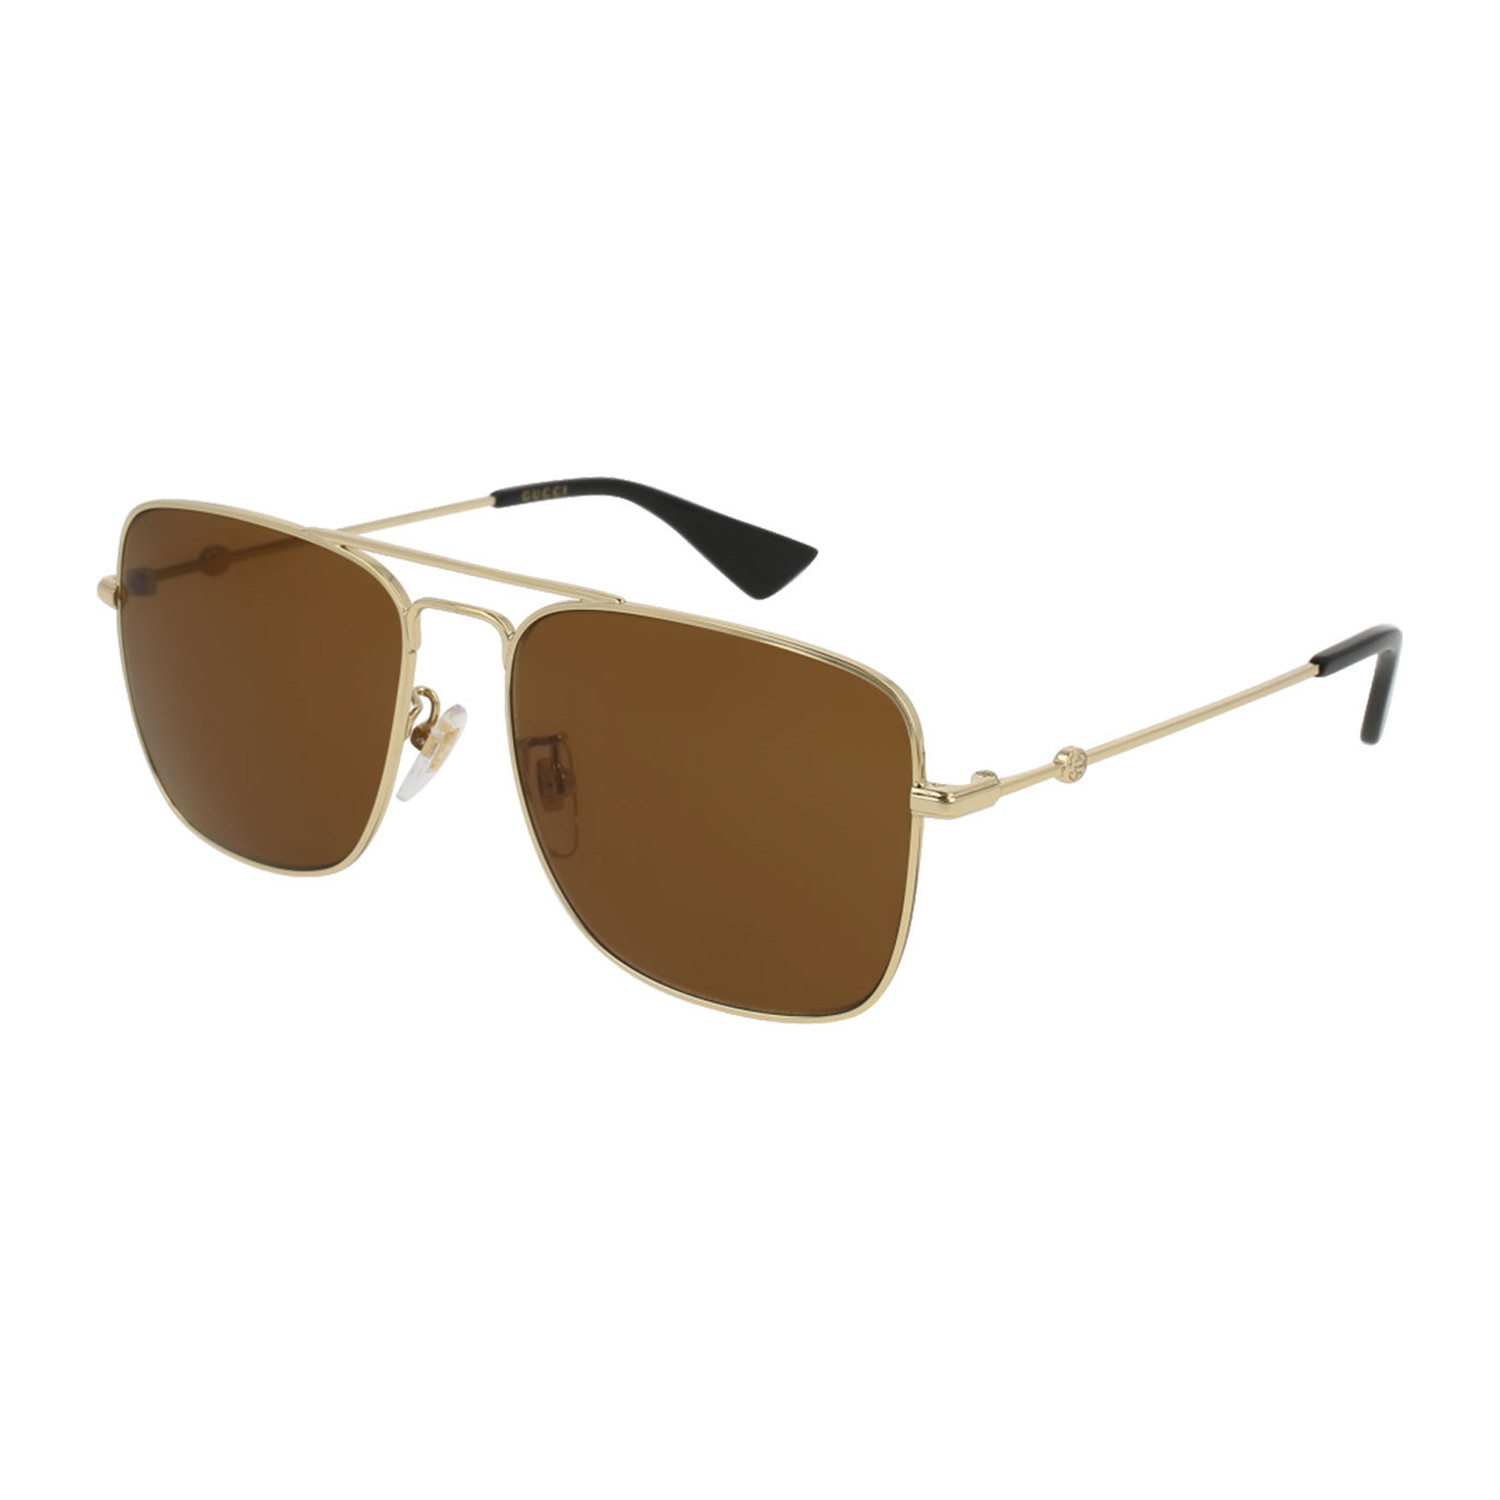 Gucci // Men's GG0108S-001-55 Sunglasses // Gold + Brown - Gucci & Dior ...